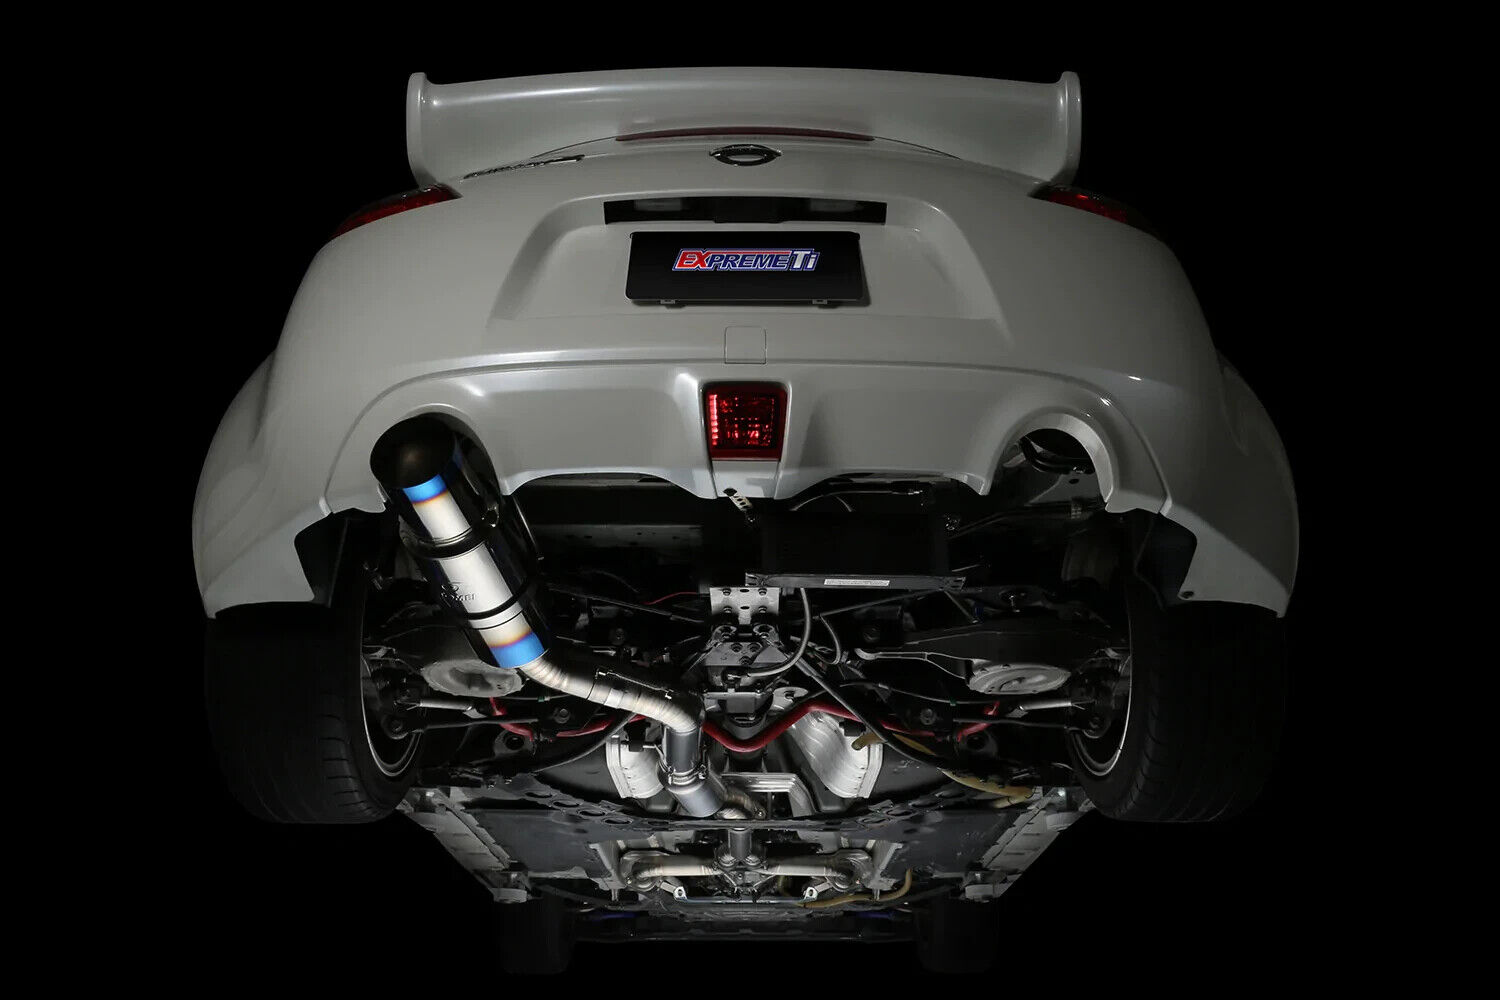 Tomei Expreme Ti Titanium Full Single Exit Exhaust for Nissan Z34 370Z 09+ New